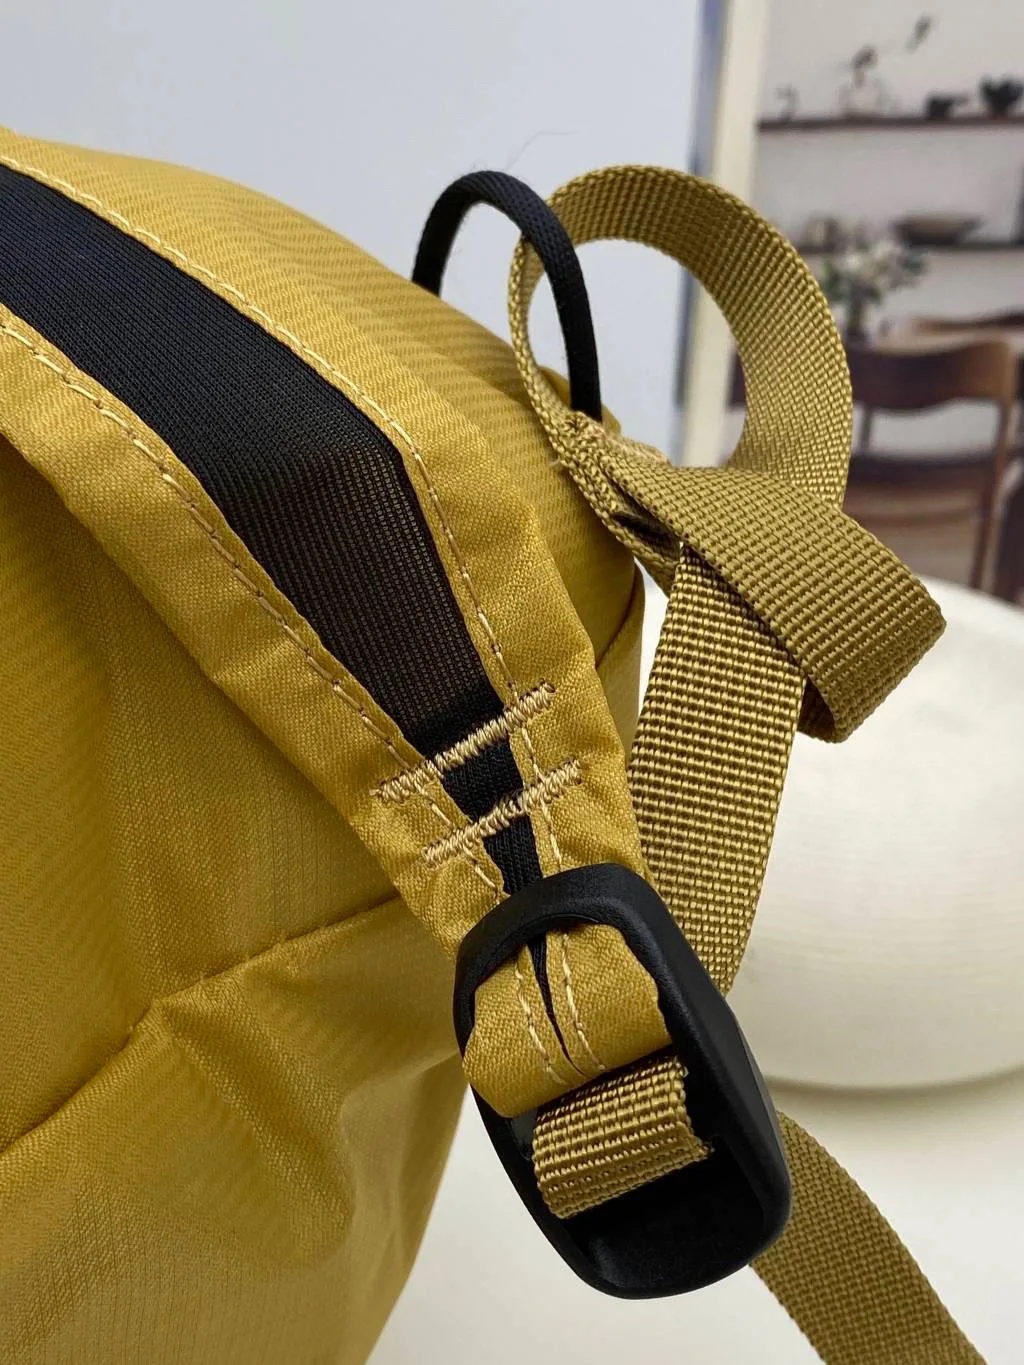 Рюкзак ARC HELlAD 15 л с вышивкой и логотипом, водонепроницаемый рюкзак для кемпинга, пешего туризма, походов, спортивные дорожные сумки высокого качества